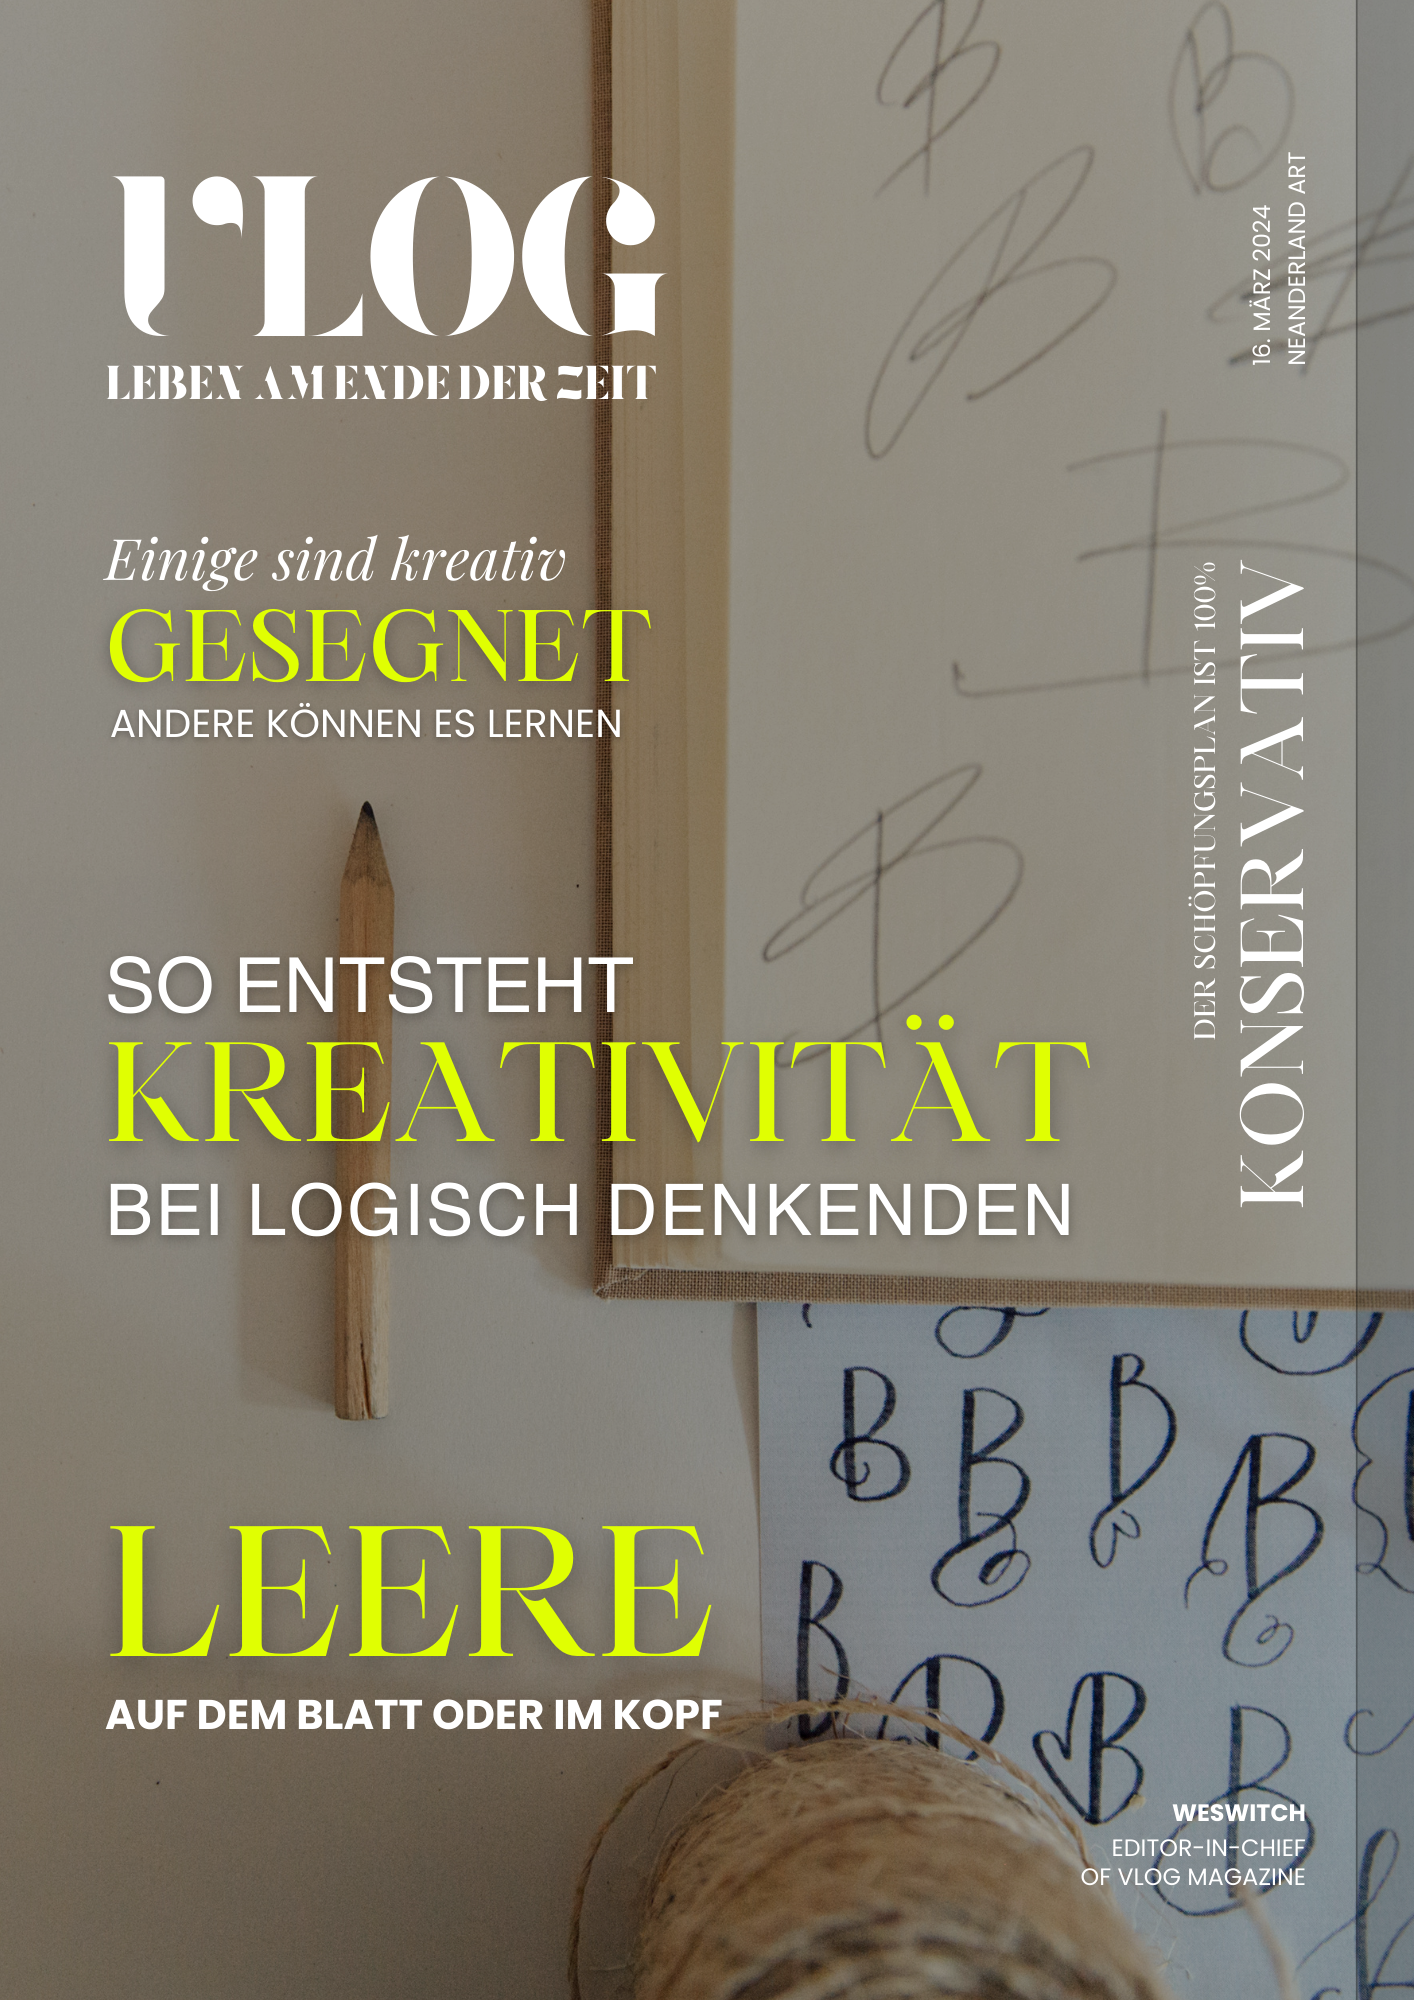 Magazin-Cover mit im Hintergrund ein Buch und Skizzen von Buchstaben, die Schrift mit dem Titel VLOG - Leben am Ende der Zeit und den Titeln Gesegnet, So entsteht Kreativität bei logisch Denkenden, Leere